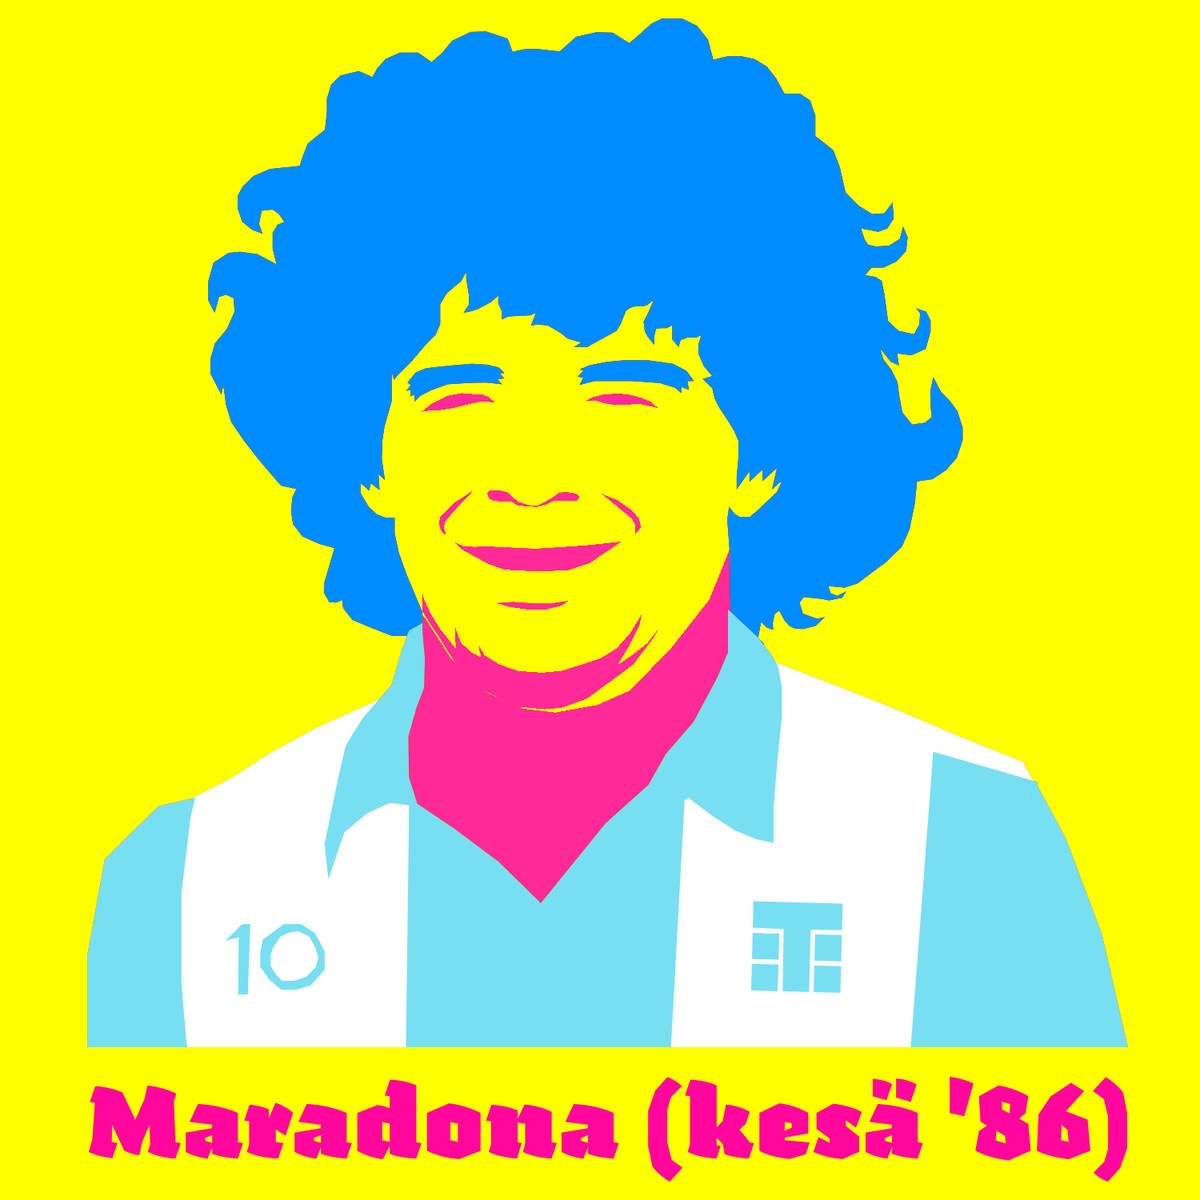 Maradona Kes ' 86